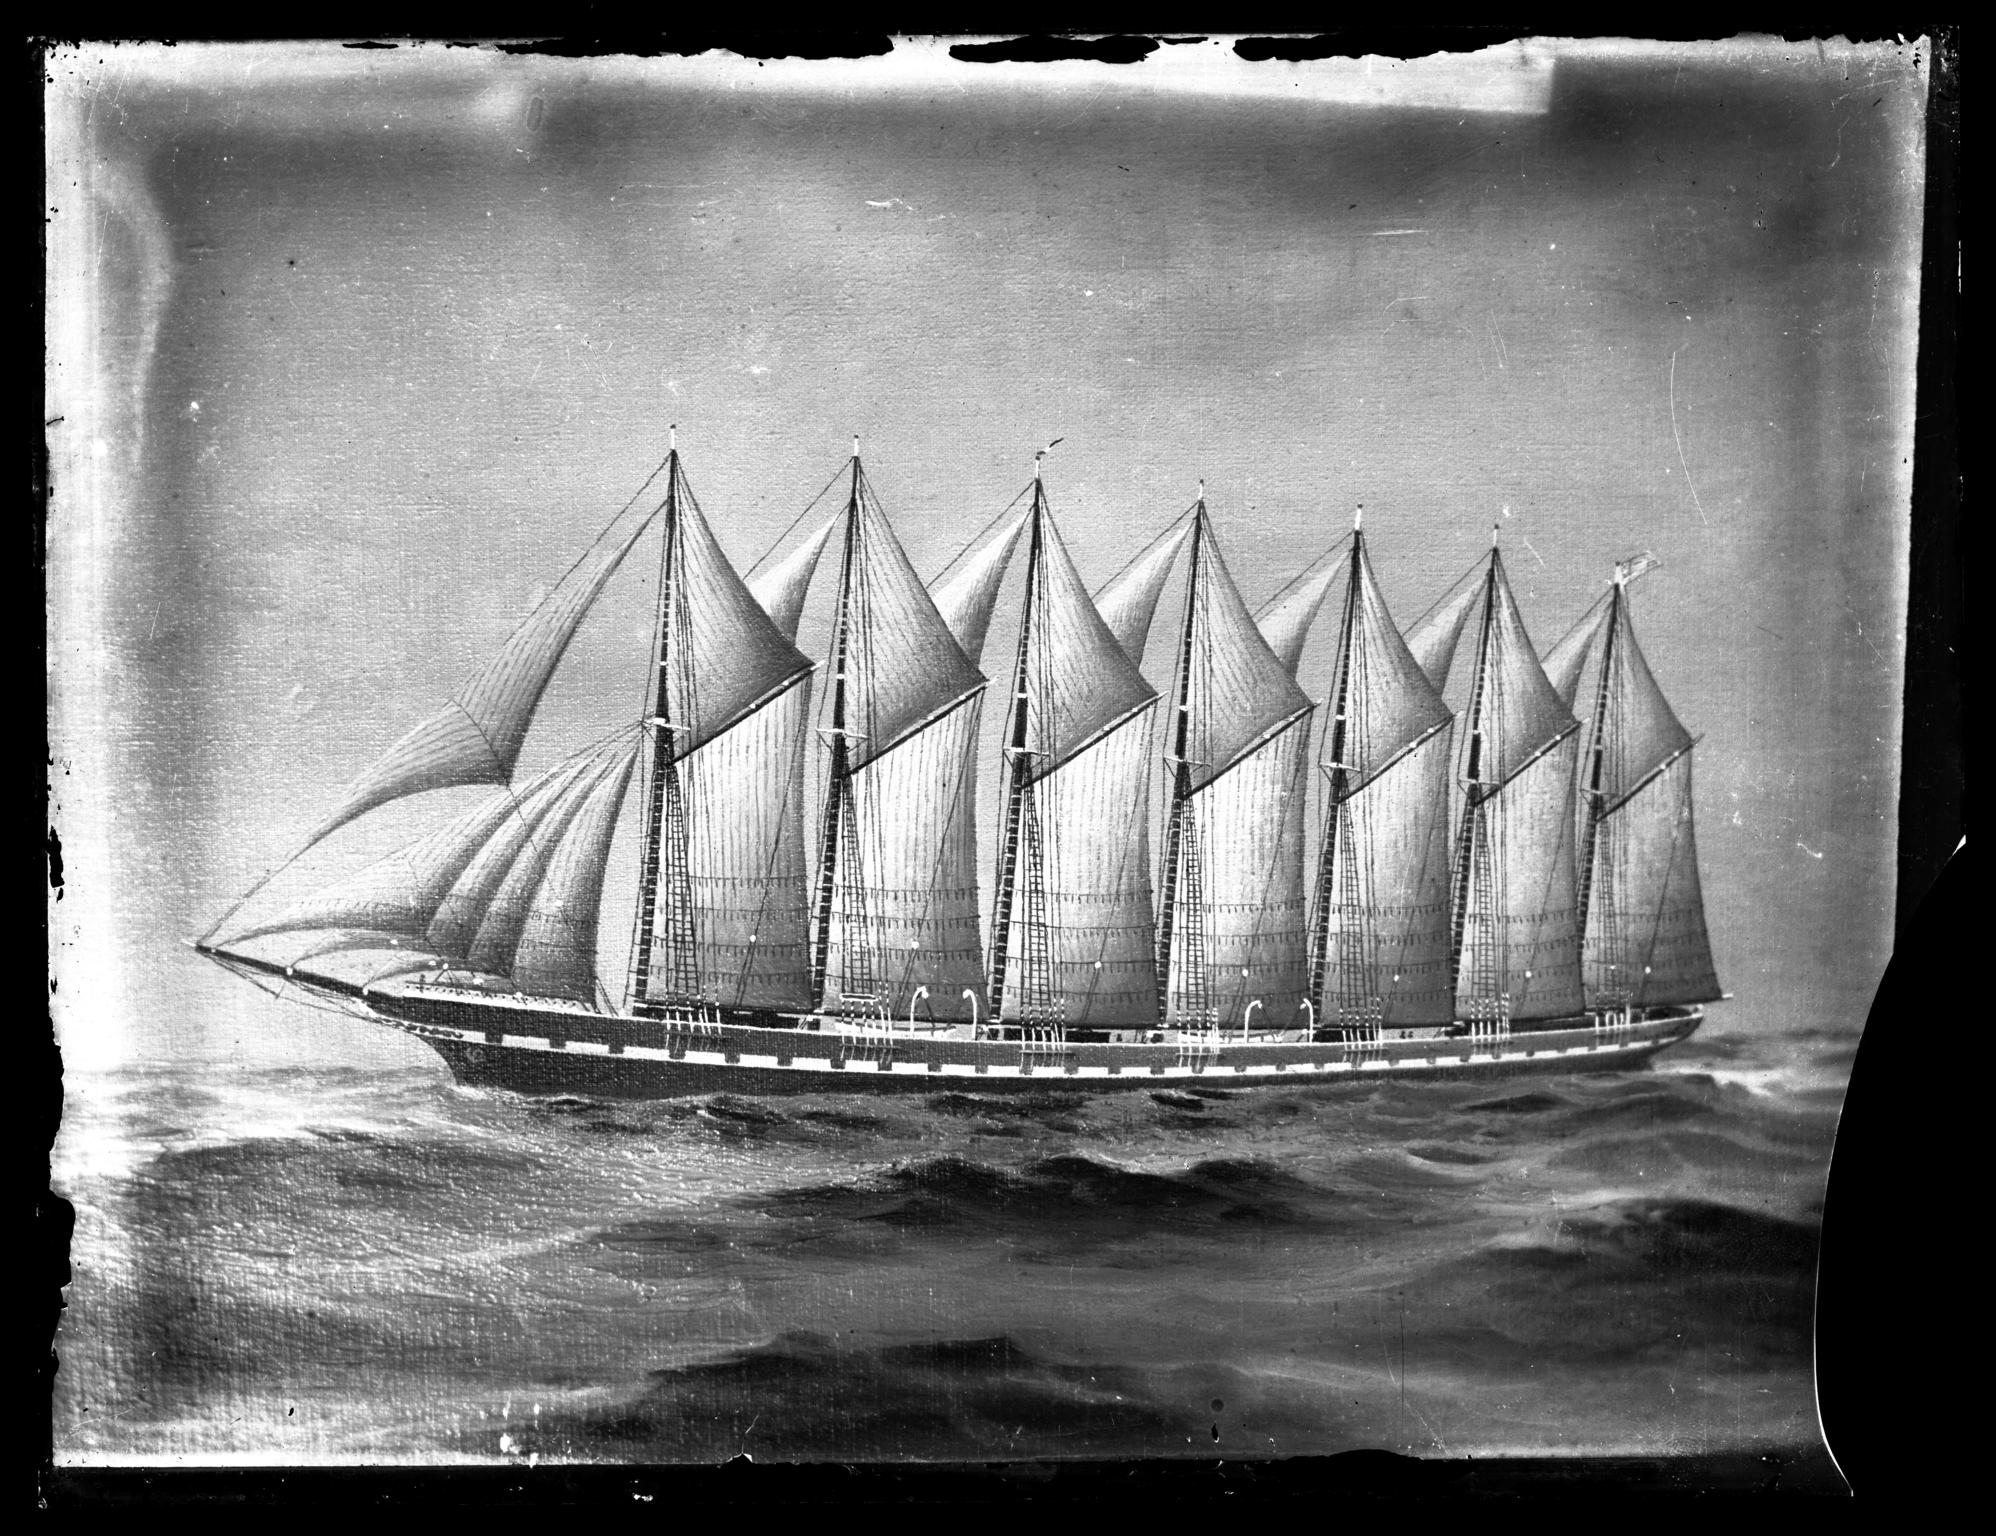 AMERICA (sail), glass negative